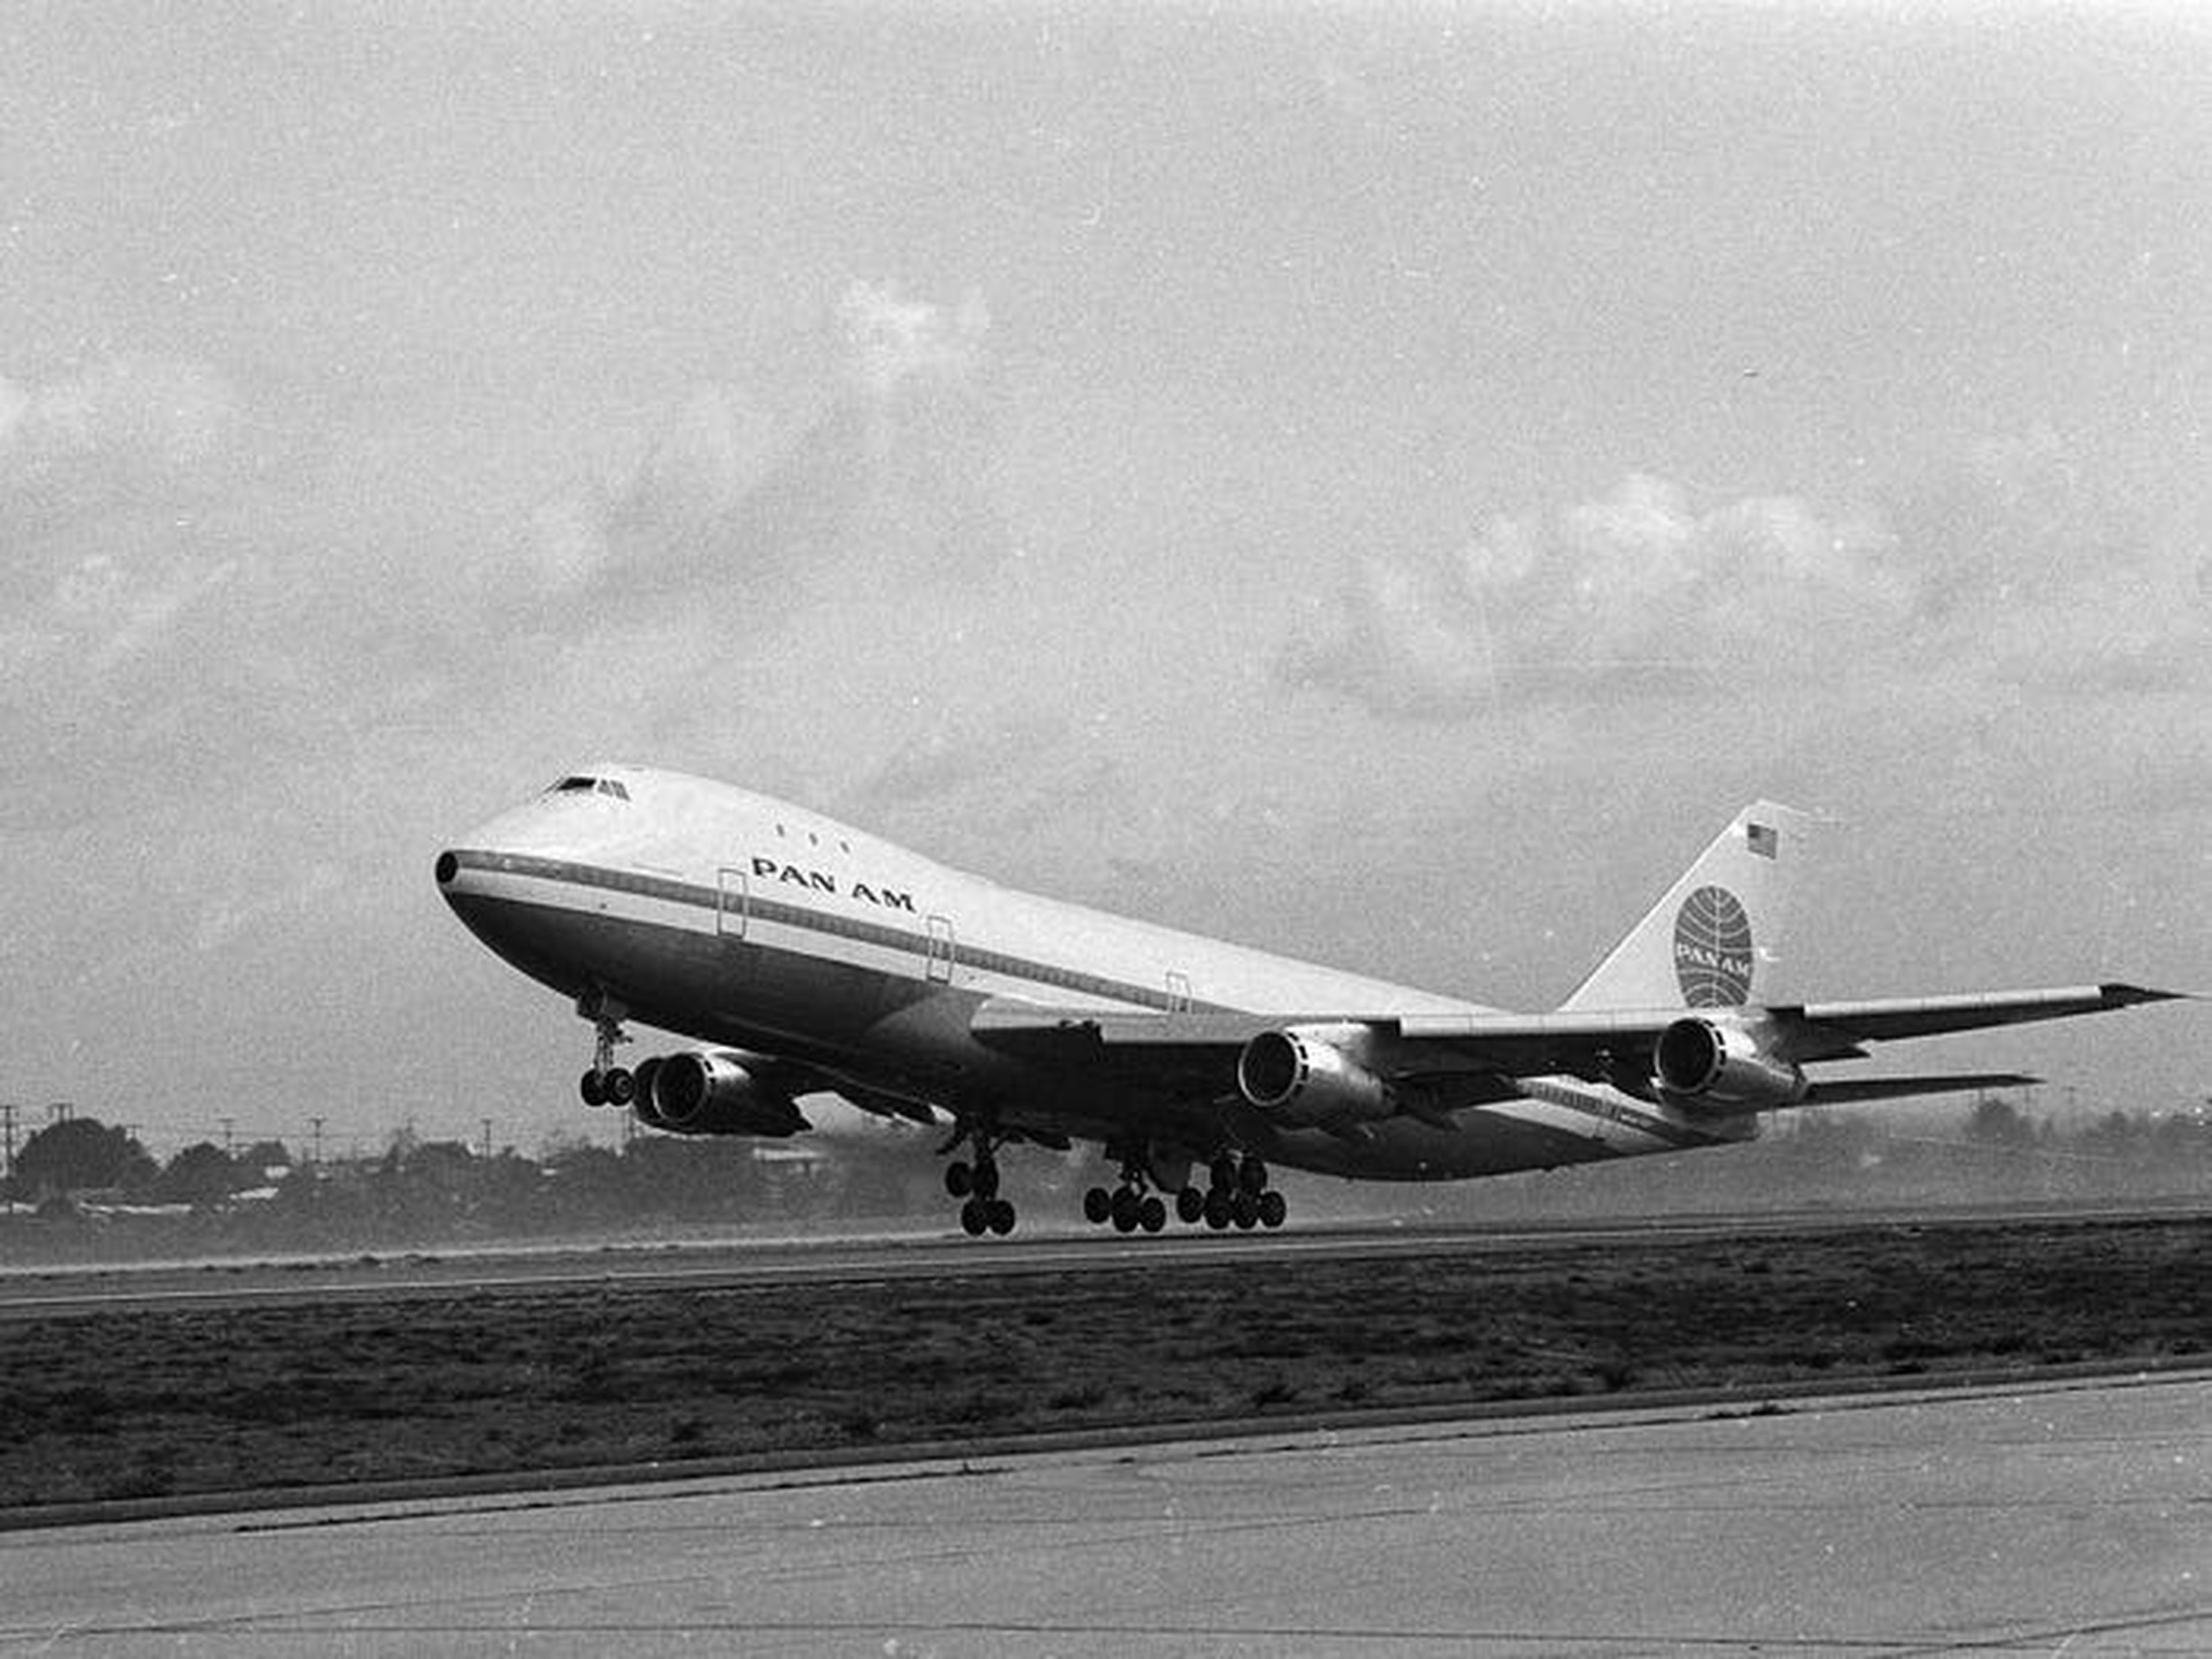 El ritmo de la innovación fue asombroso. Menos de un siglo después del vuelo de los hermanos Wright, teníamos aviones Boeing 747 jumbo.